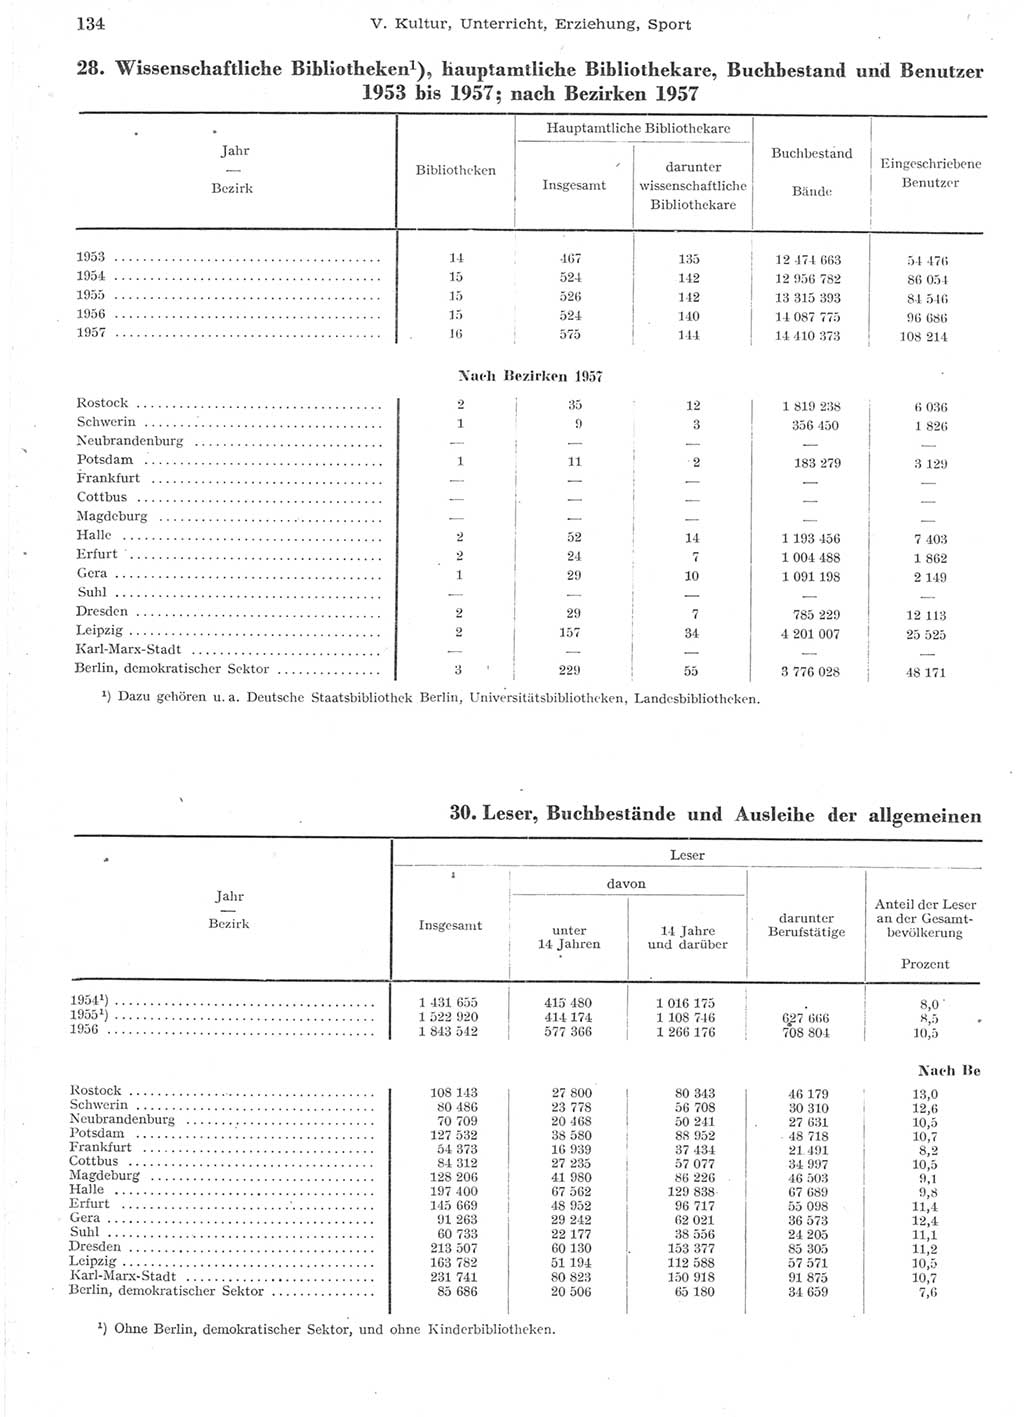 Statistisches Jahrbuch der Deutschen Demokratischen Republik (DDR) 1957, Seite 134 (Stat. Jb. DDR 1957, S. 134)